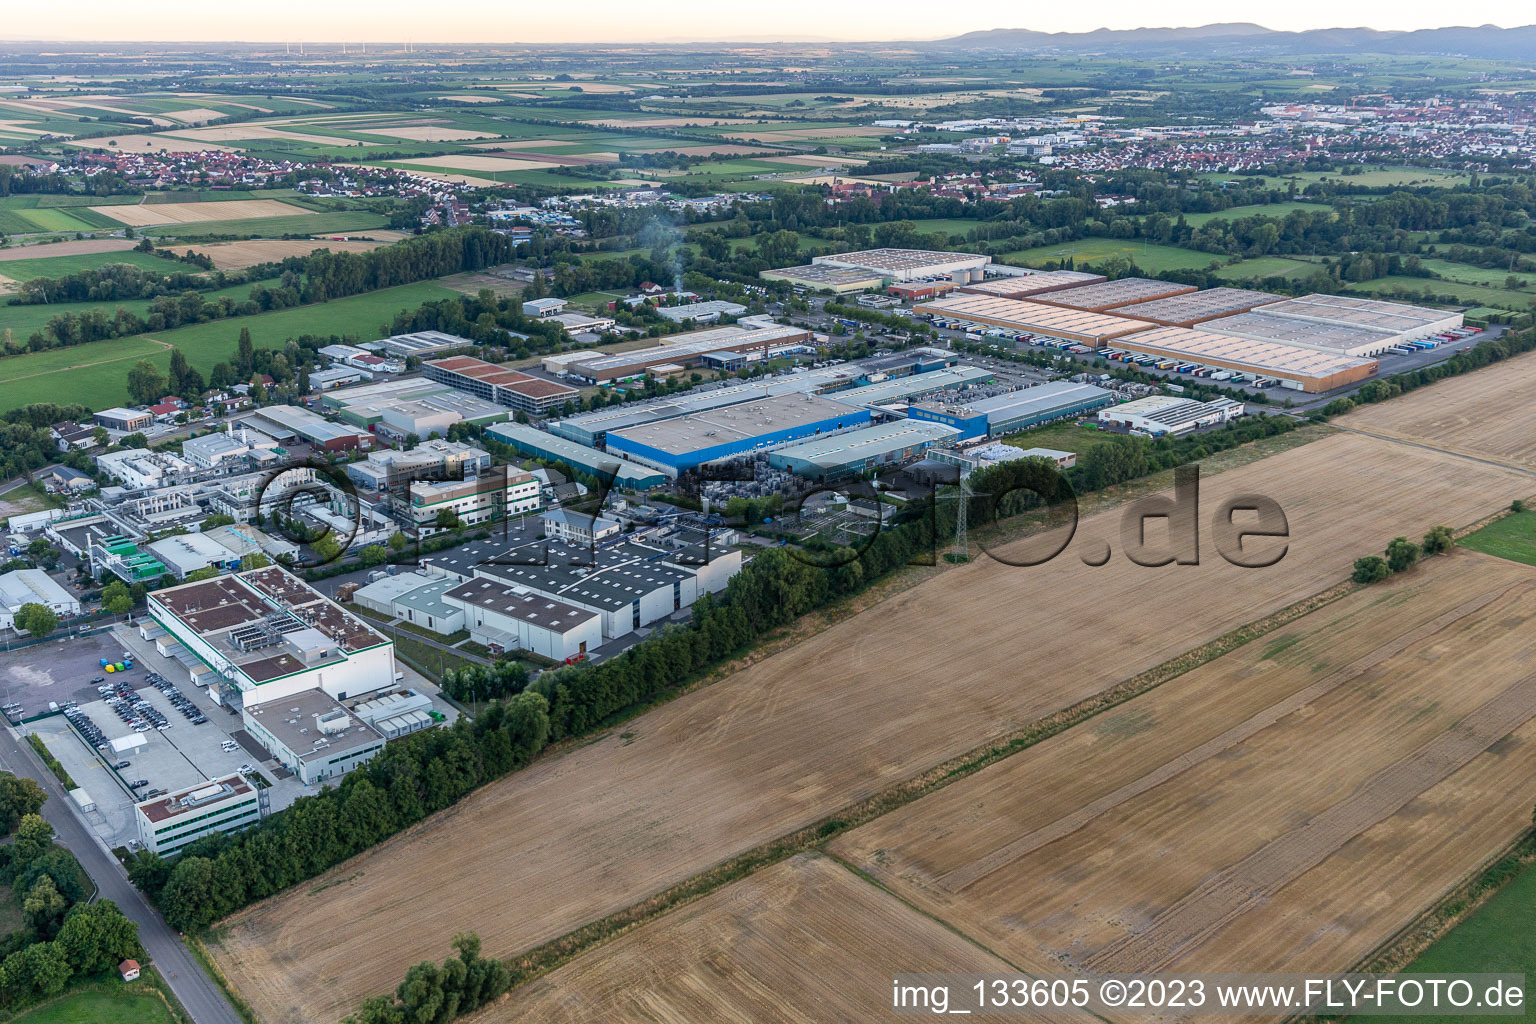 Landau in der Pfalz im Bundesland Rheinland-Pfalz, Deutschland von der Drohne aus gesehen